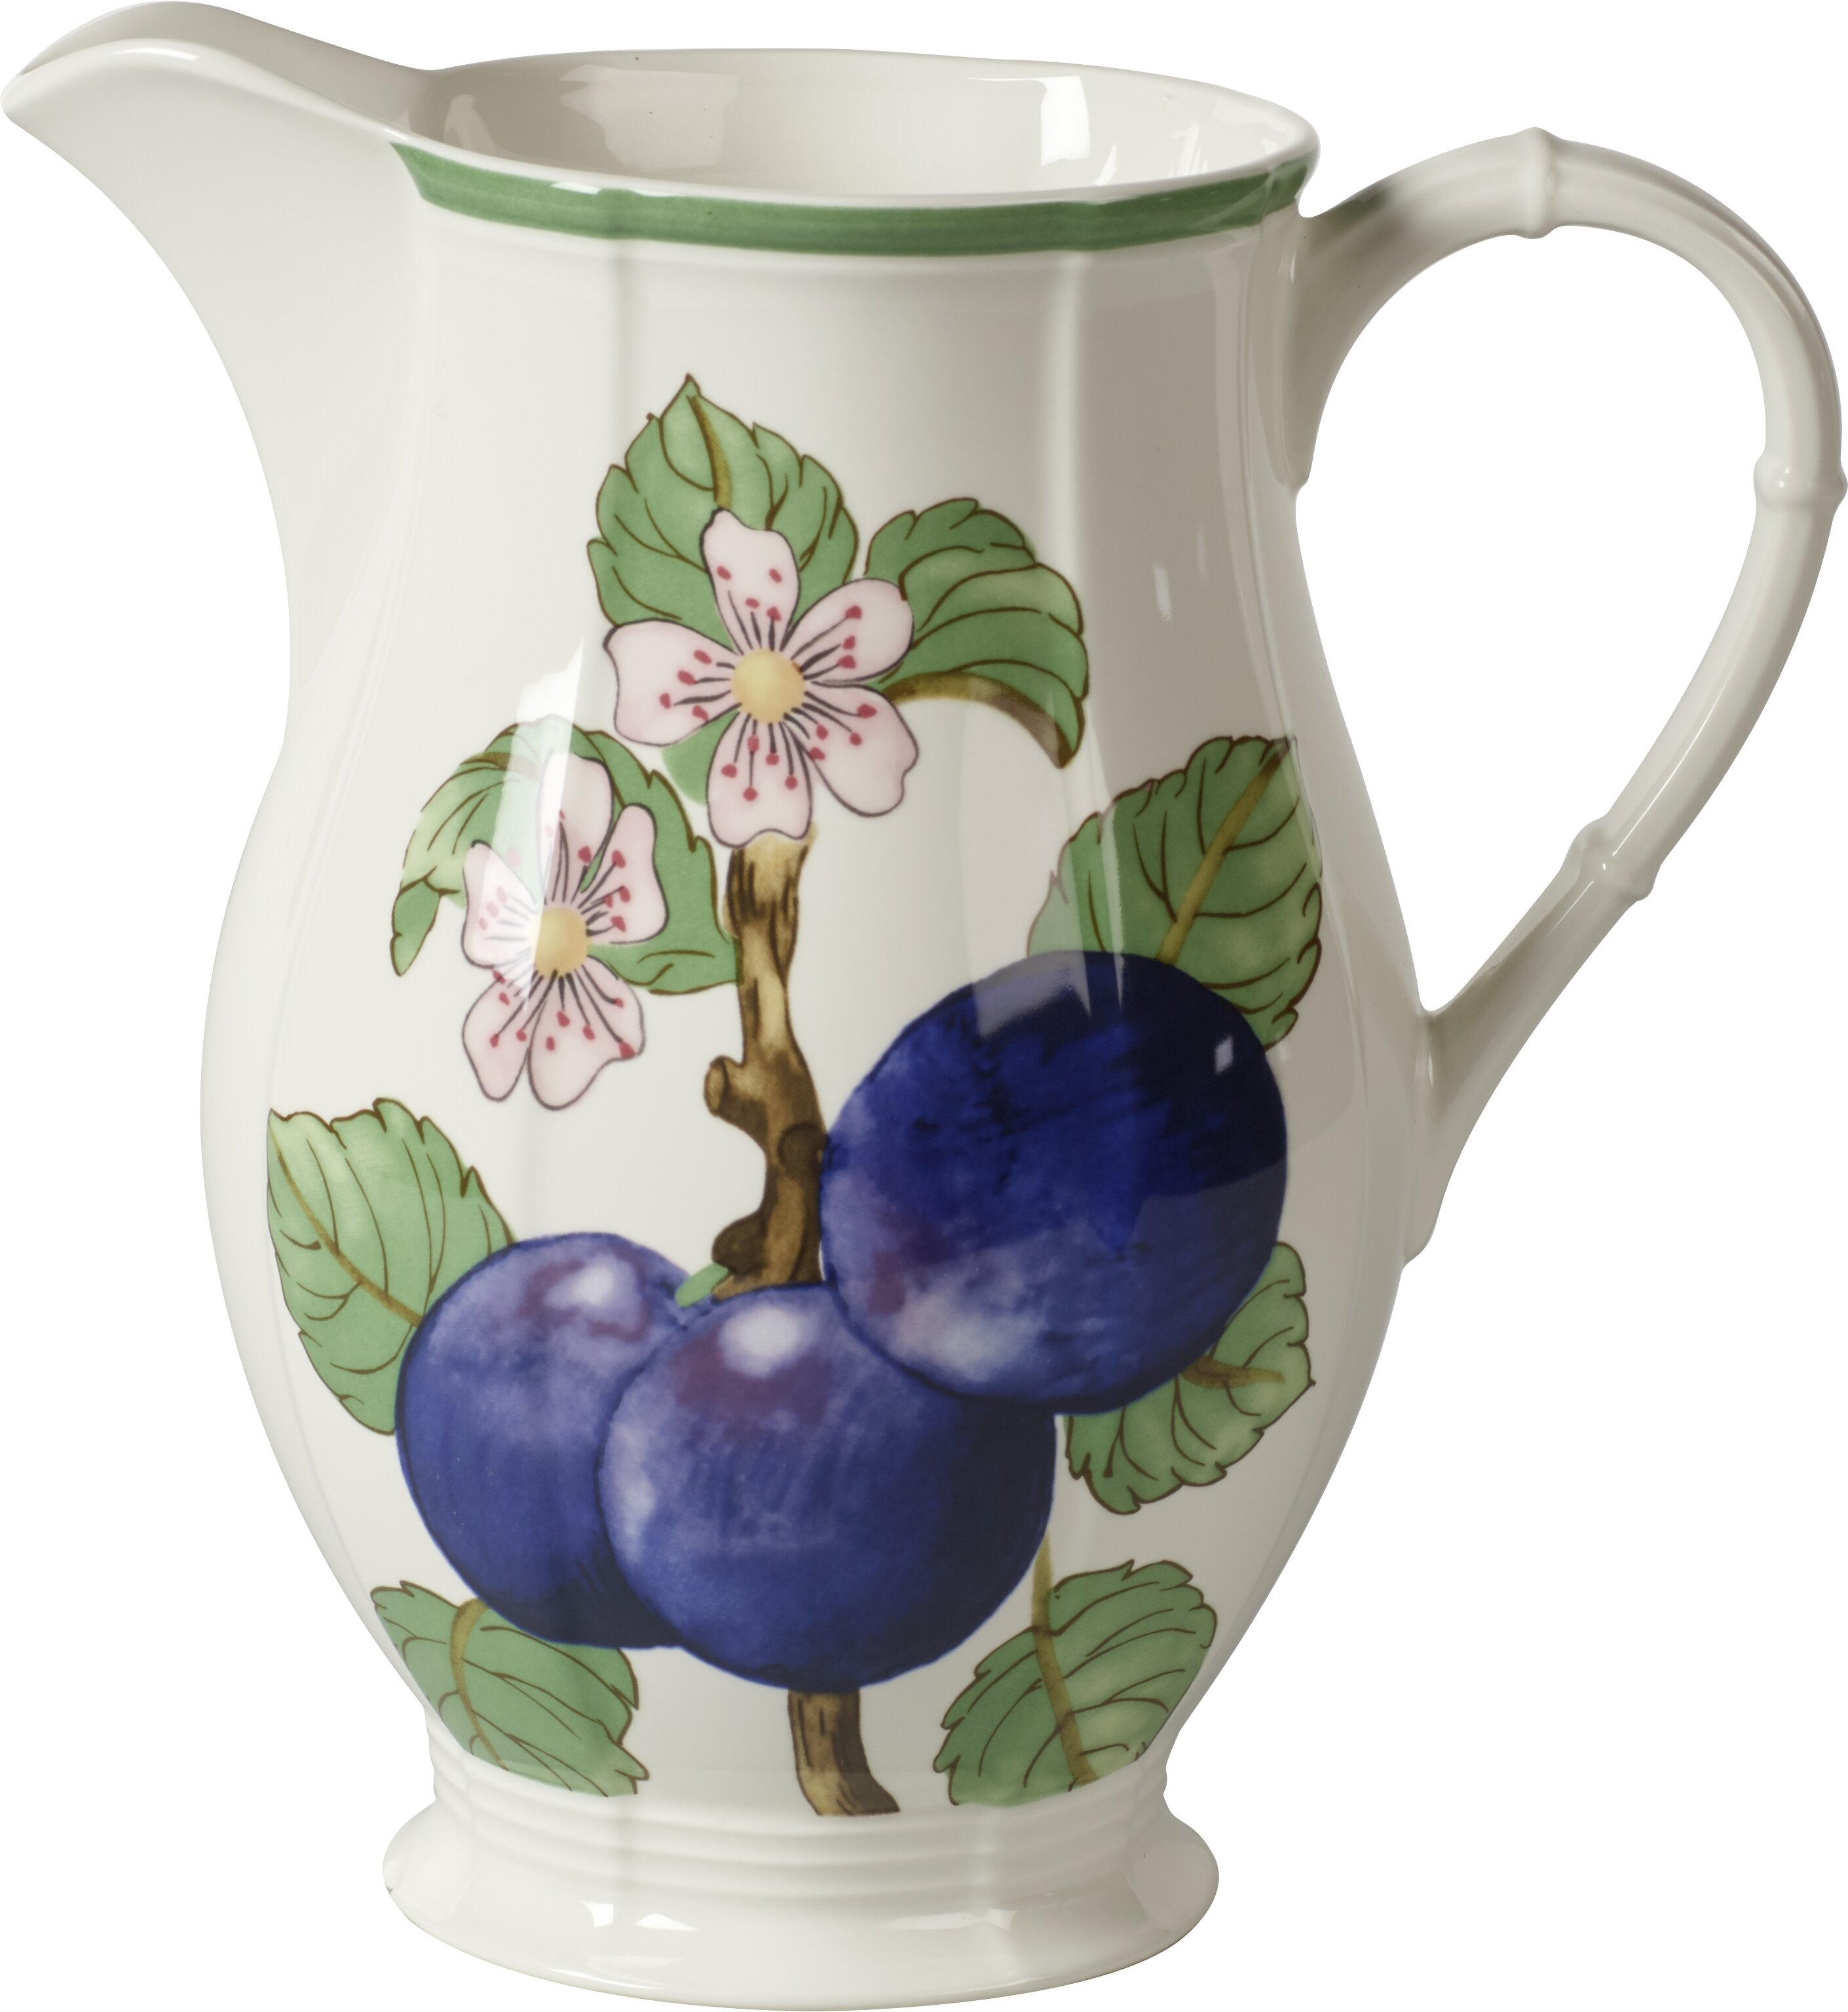 https://assets.wfcdn.com/im/31112477/compr-r85/1000/100091978/villeroy-boch-french-garden-modern-fruits-675-oz-oversized-pitcher.jpg